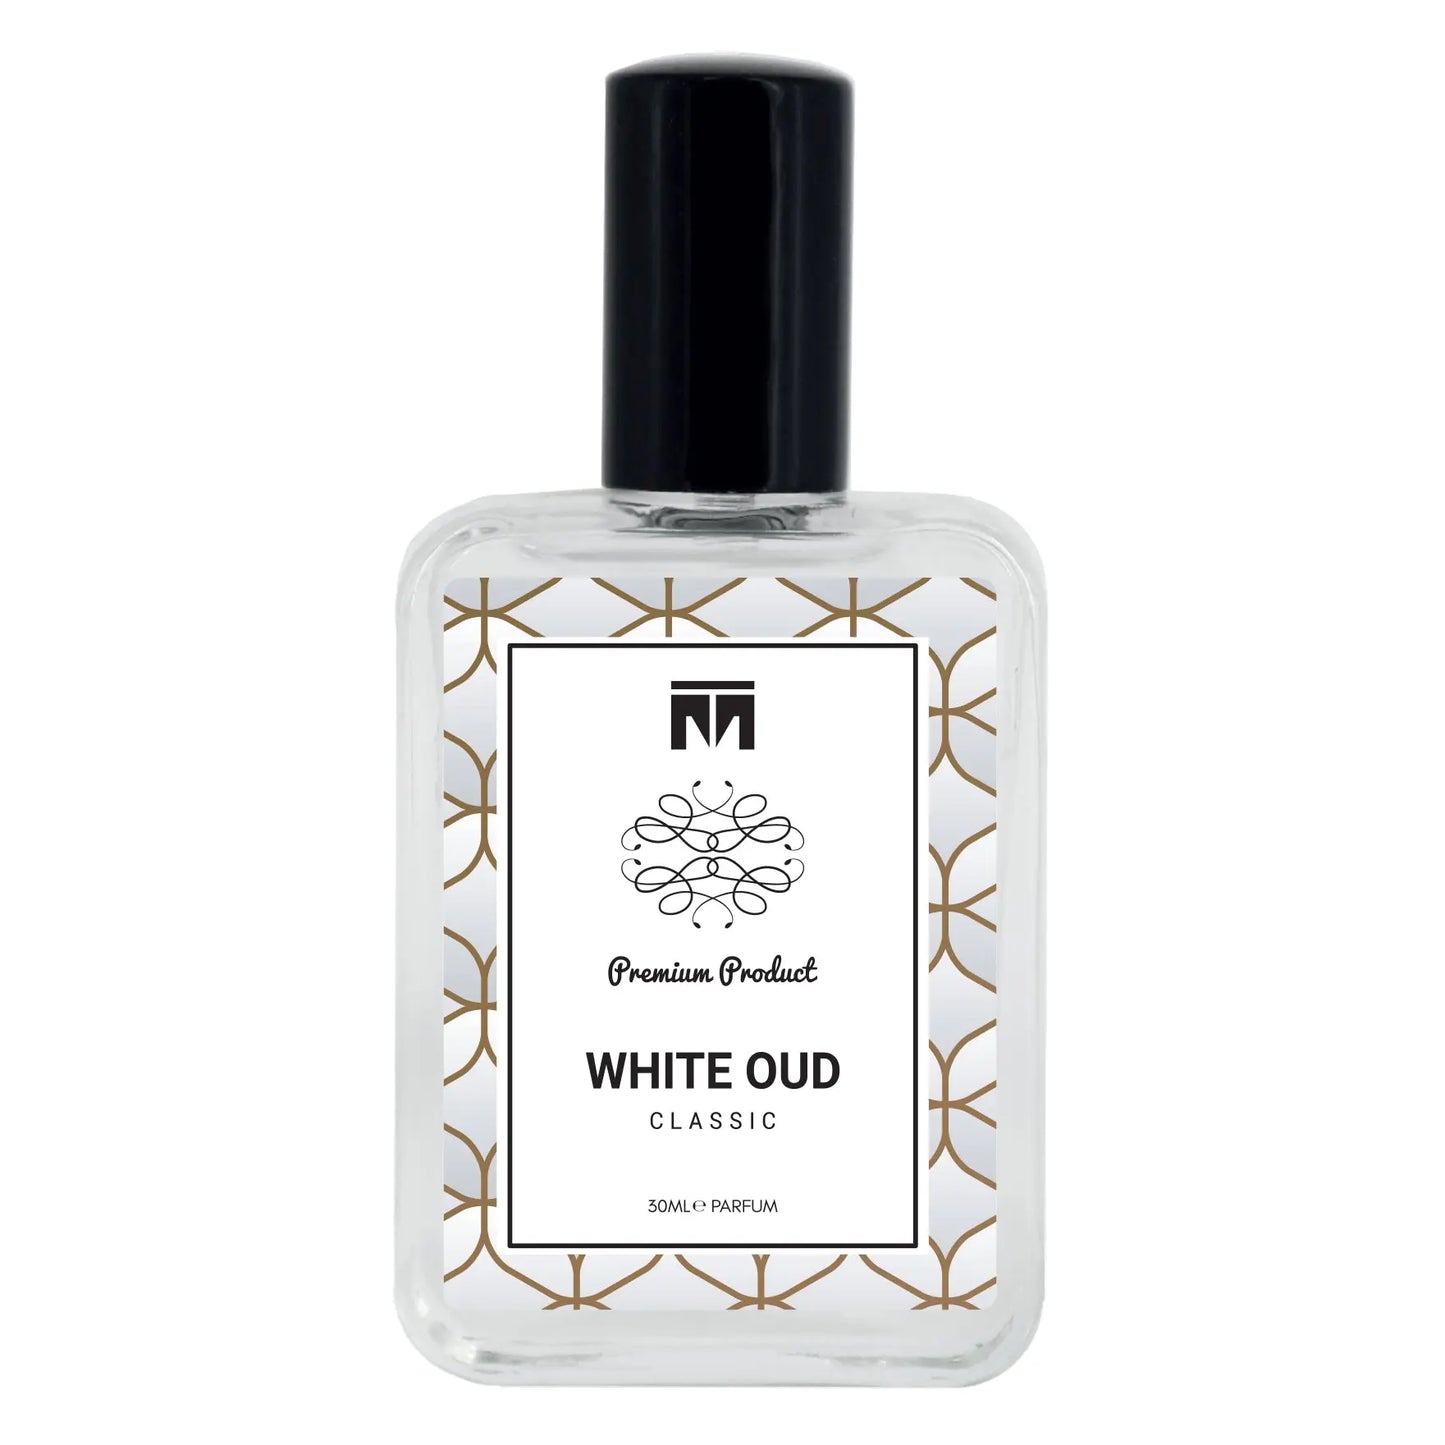 White Oud Classic - 60ml Eau De Parfum